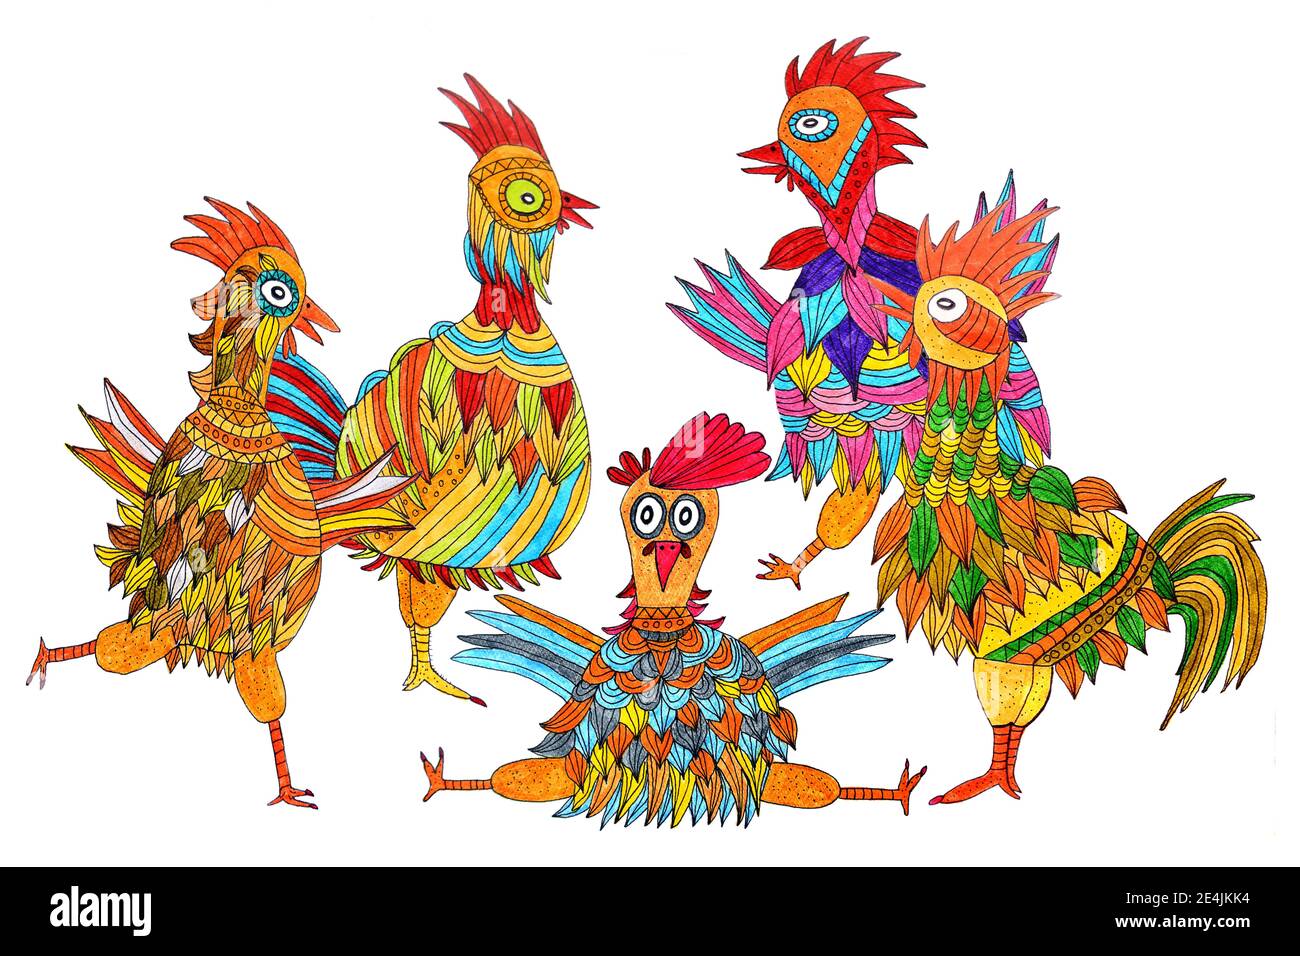 Cinq poulets colorés, peinture naïve, fond blanc Banque D'Images